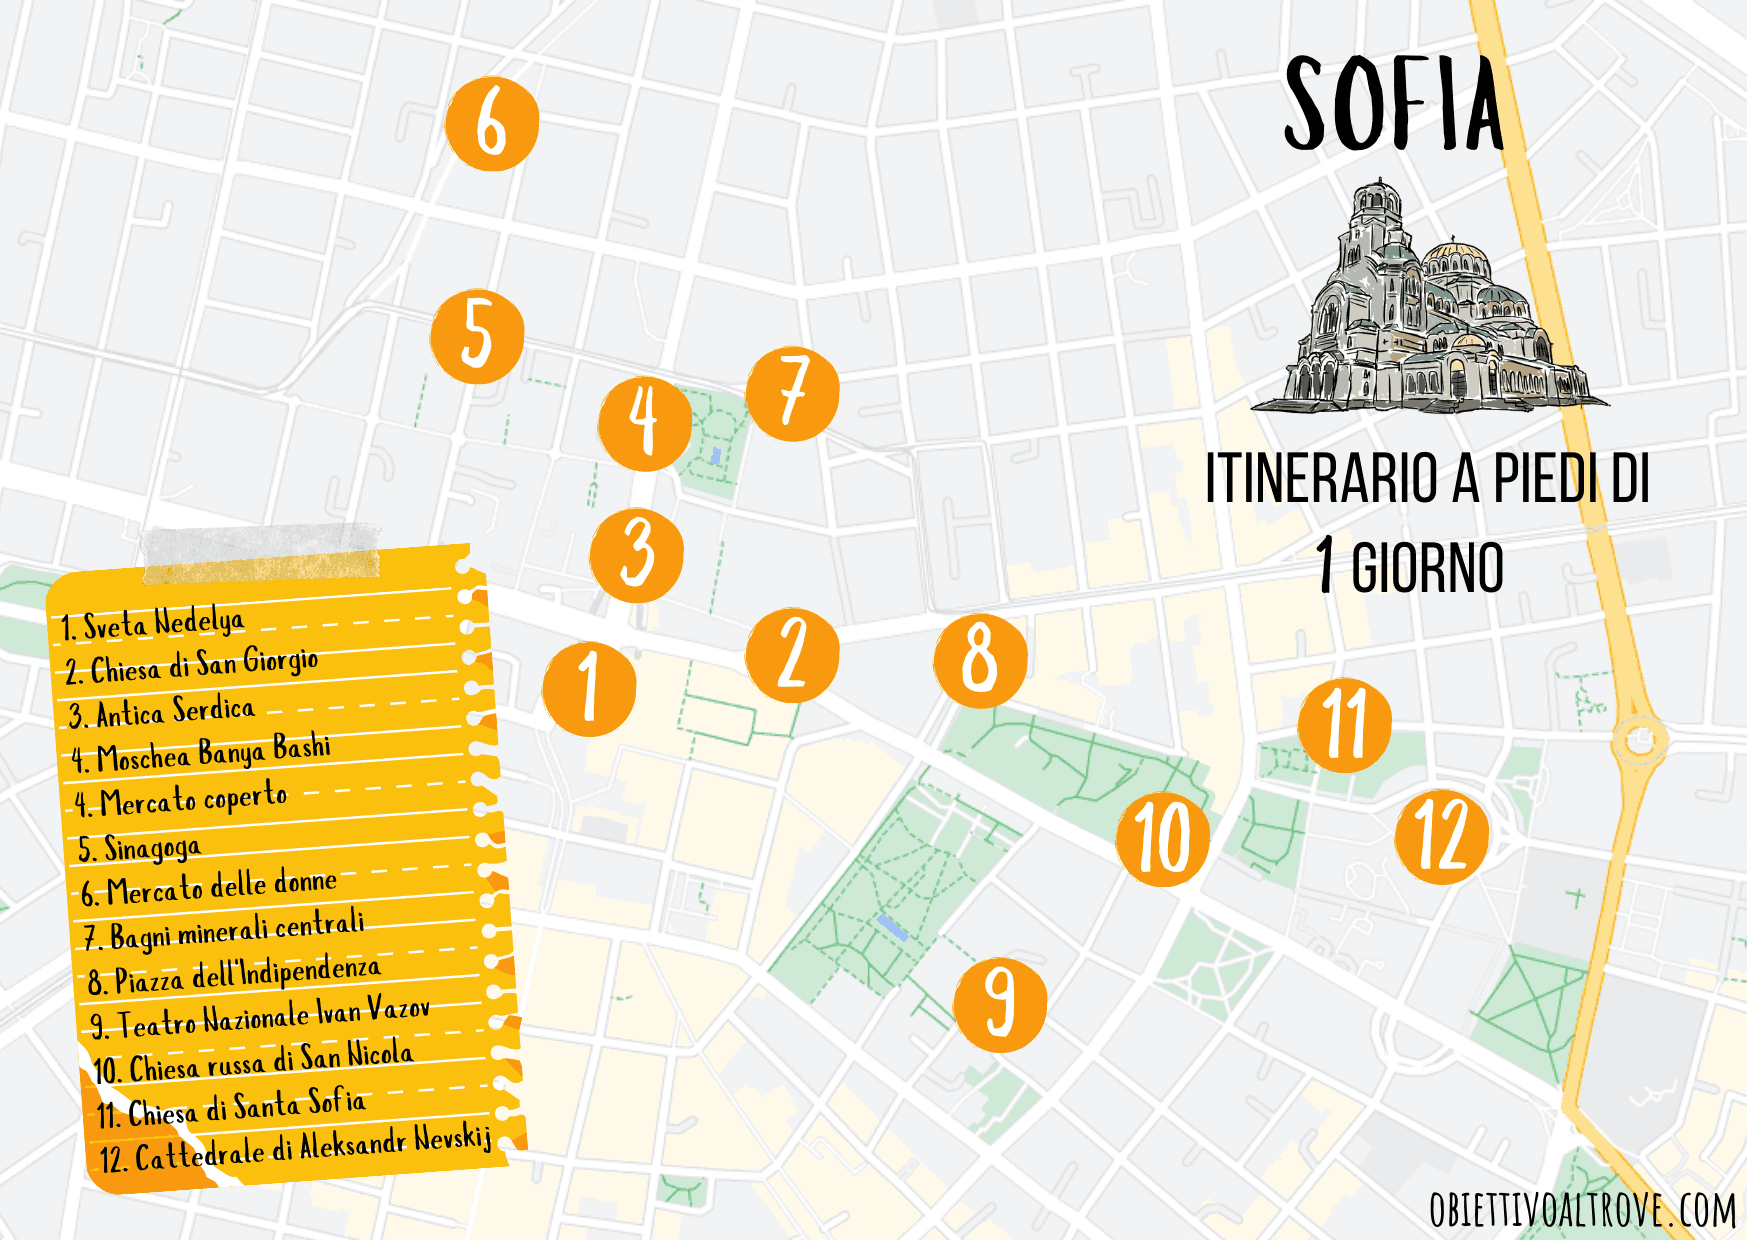 Sofia - Itinerario a piedi di un giorno